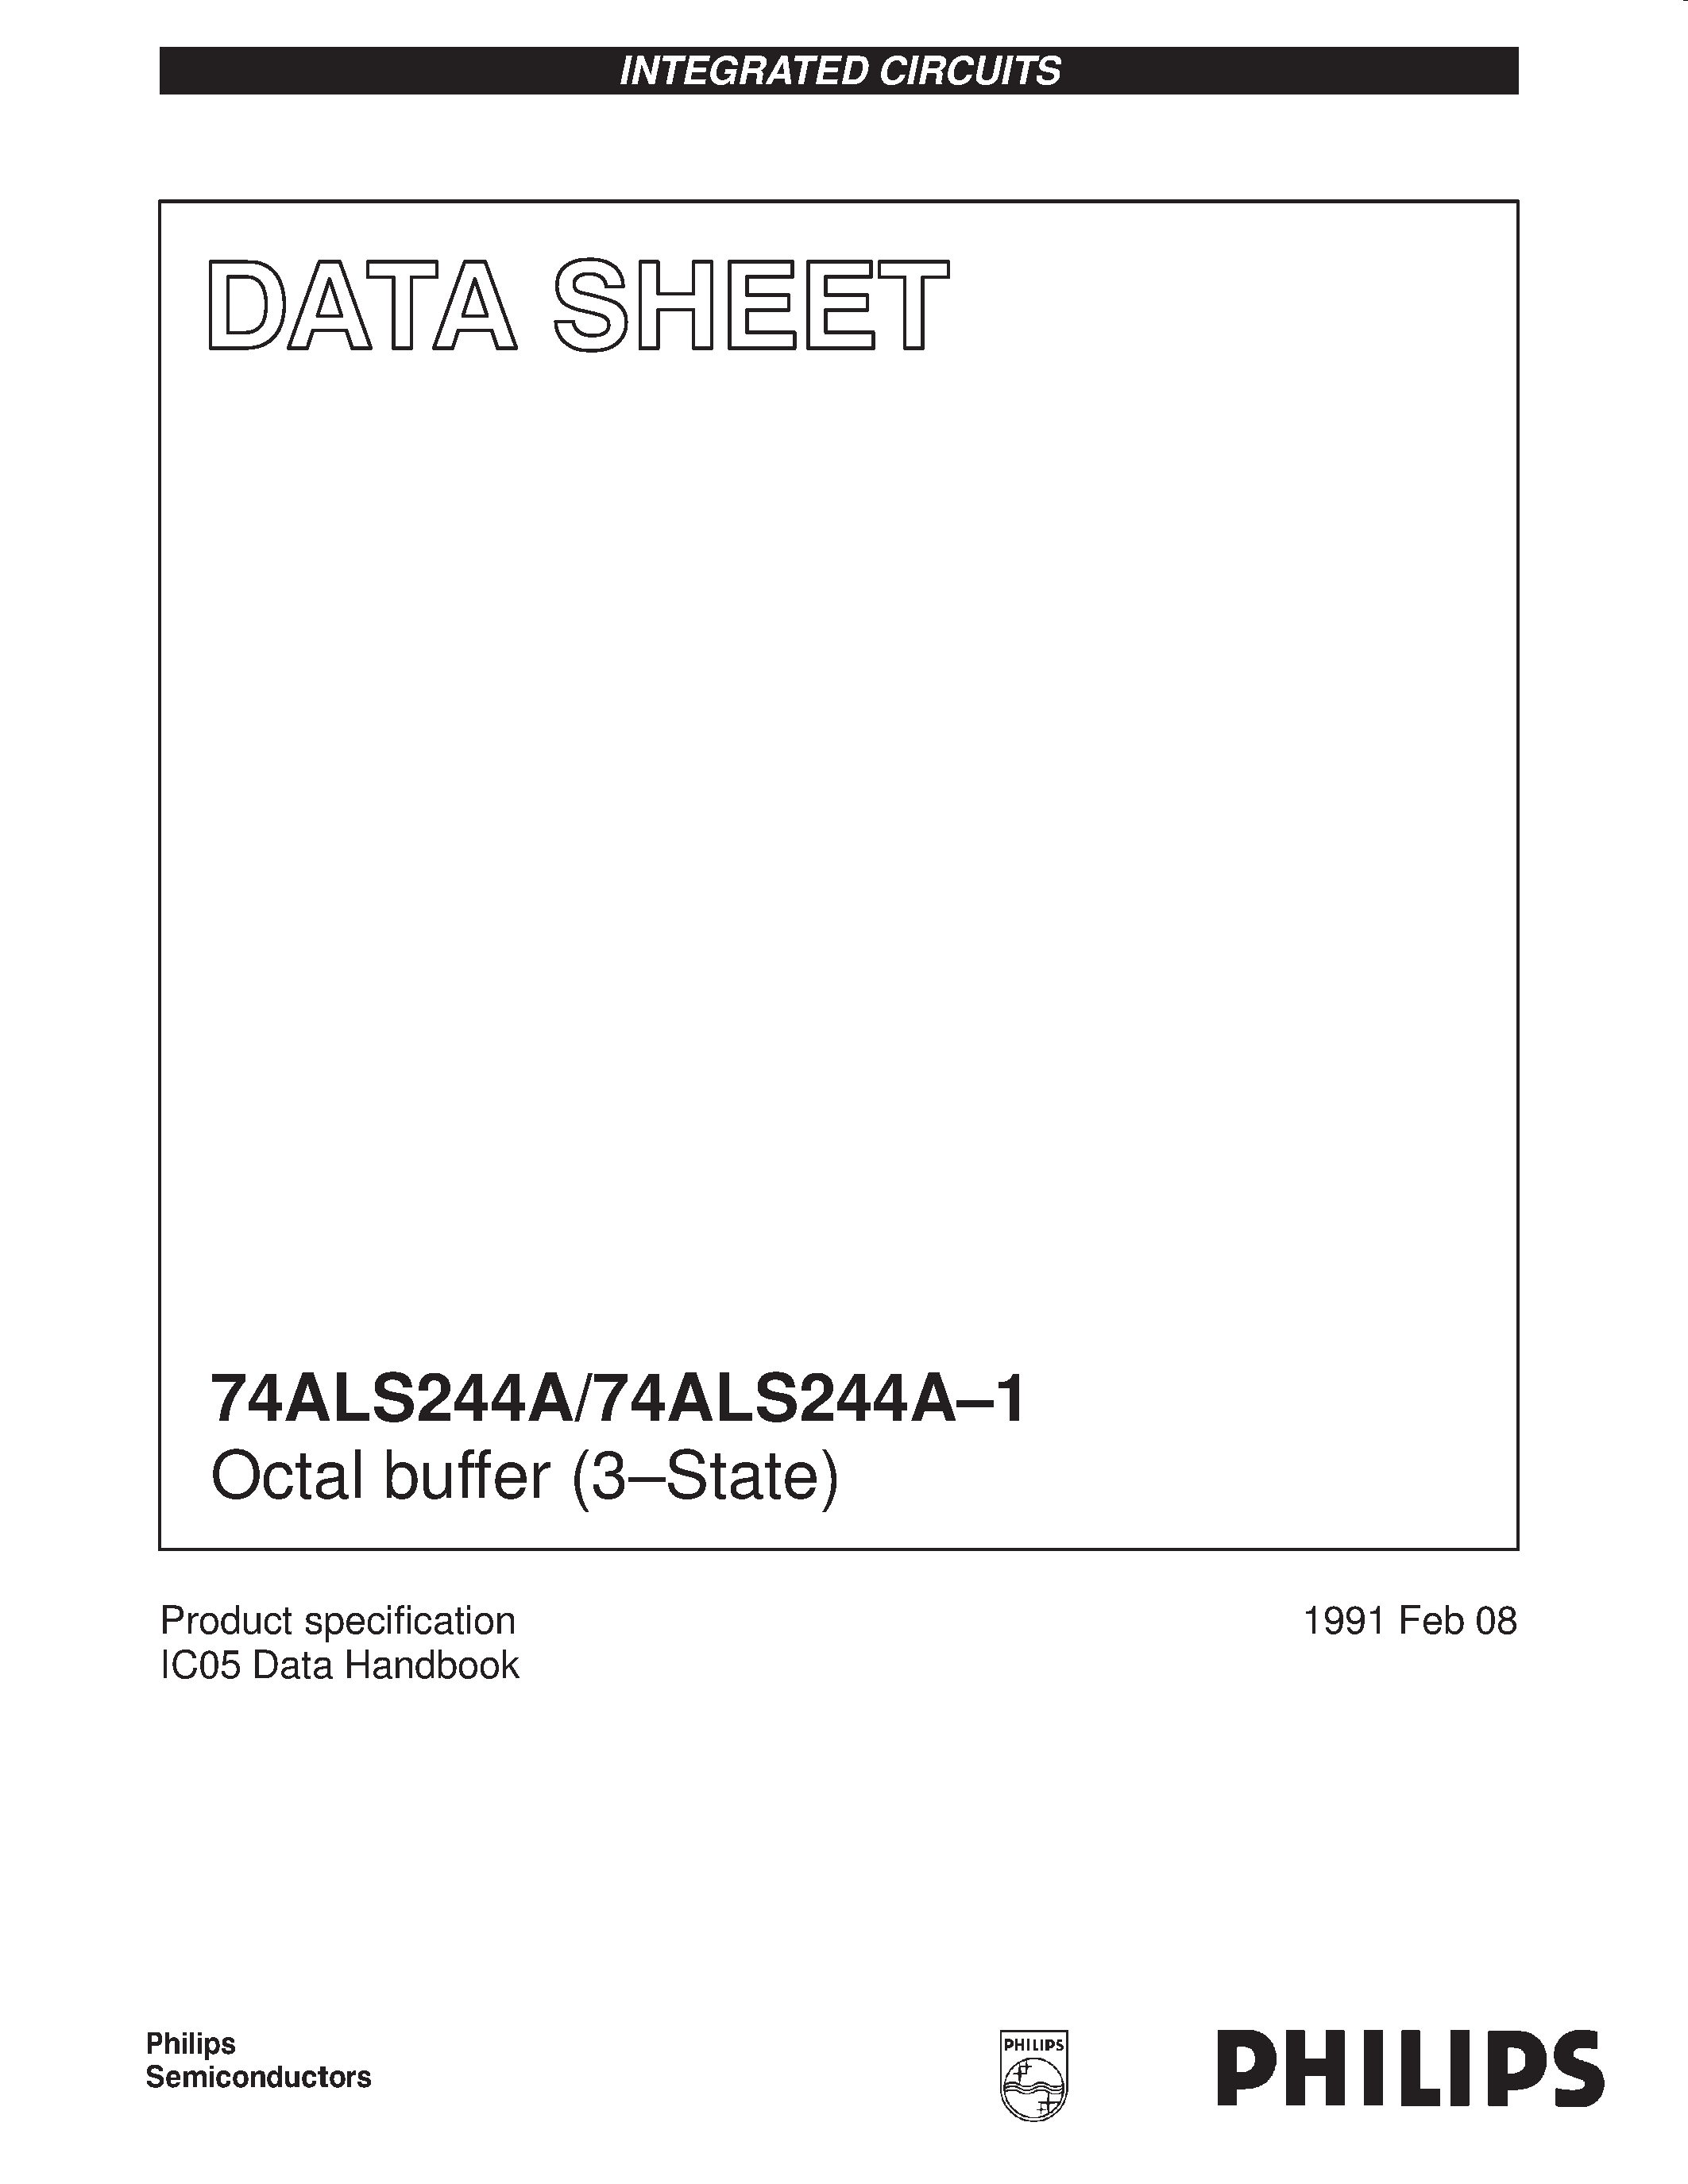 Даташит 744ALS244A-1D-Octal buffer 3-State страница 1